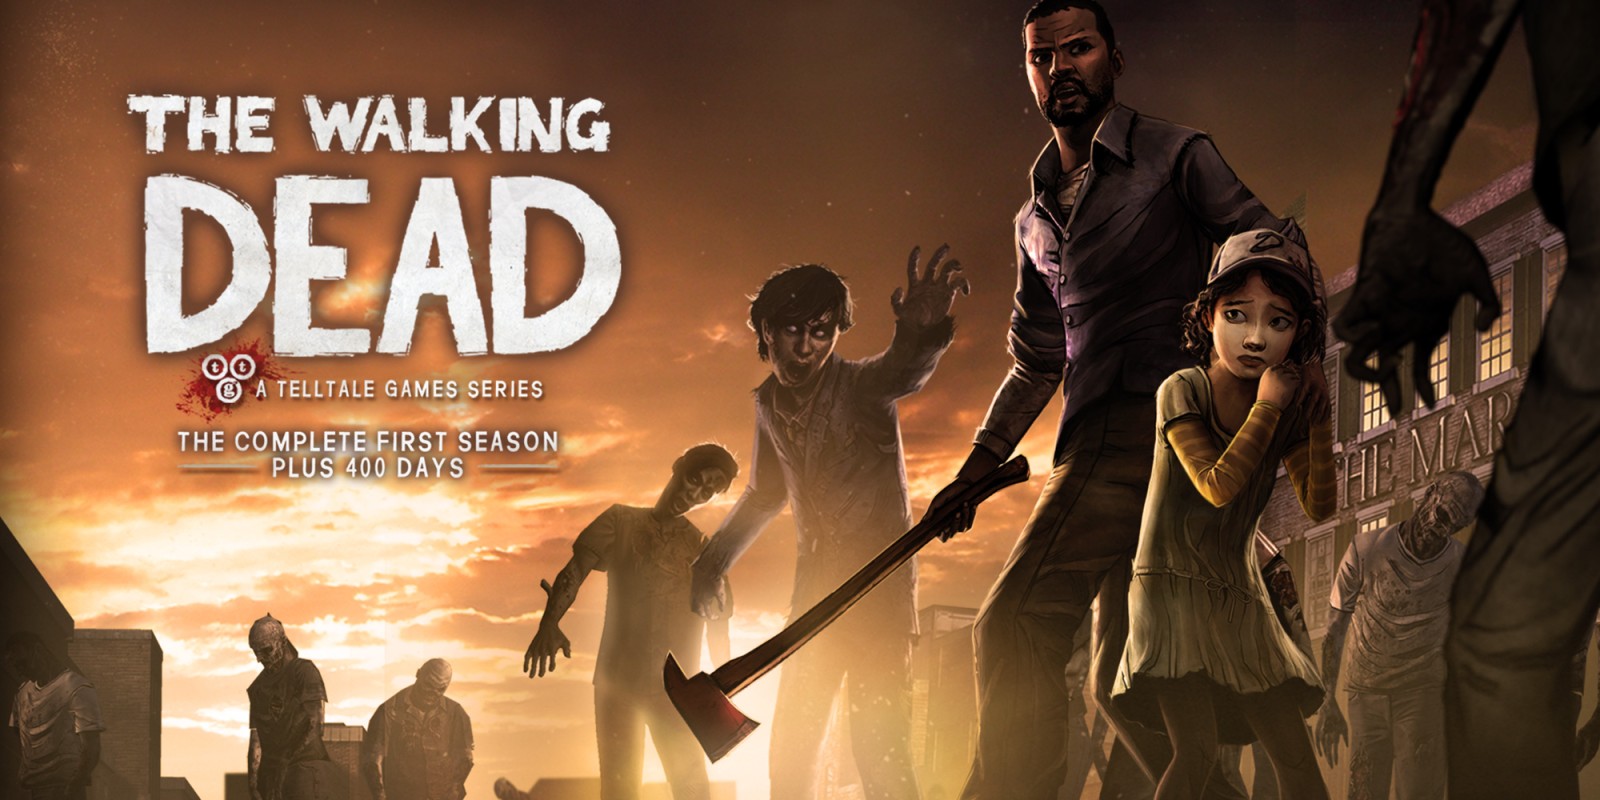 ¡Vaya sorpresa! The Walking Dead de Telltale comenzó como un spin-off de Left 4 Dead